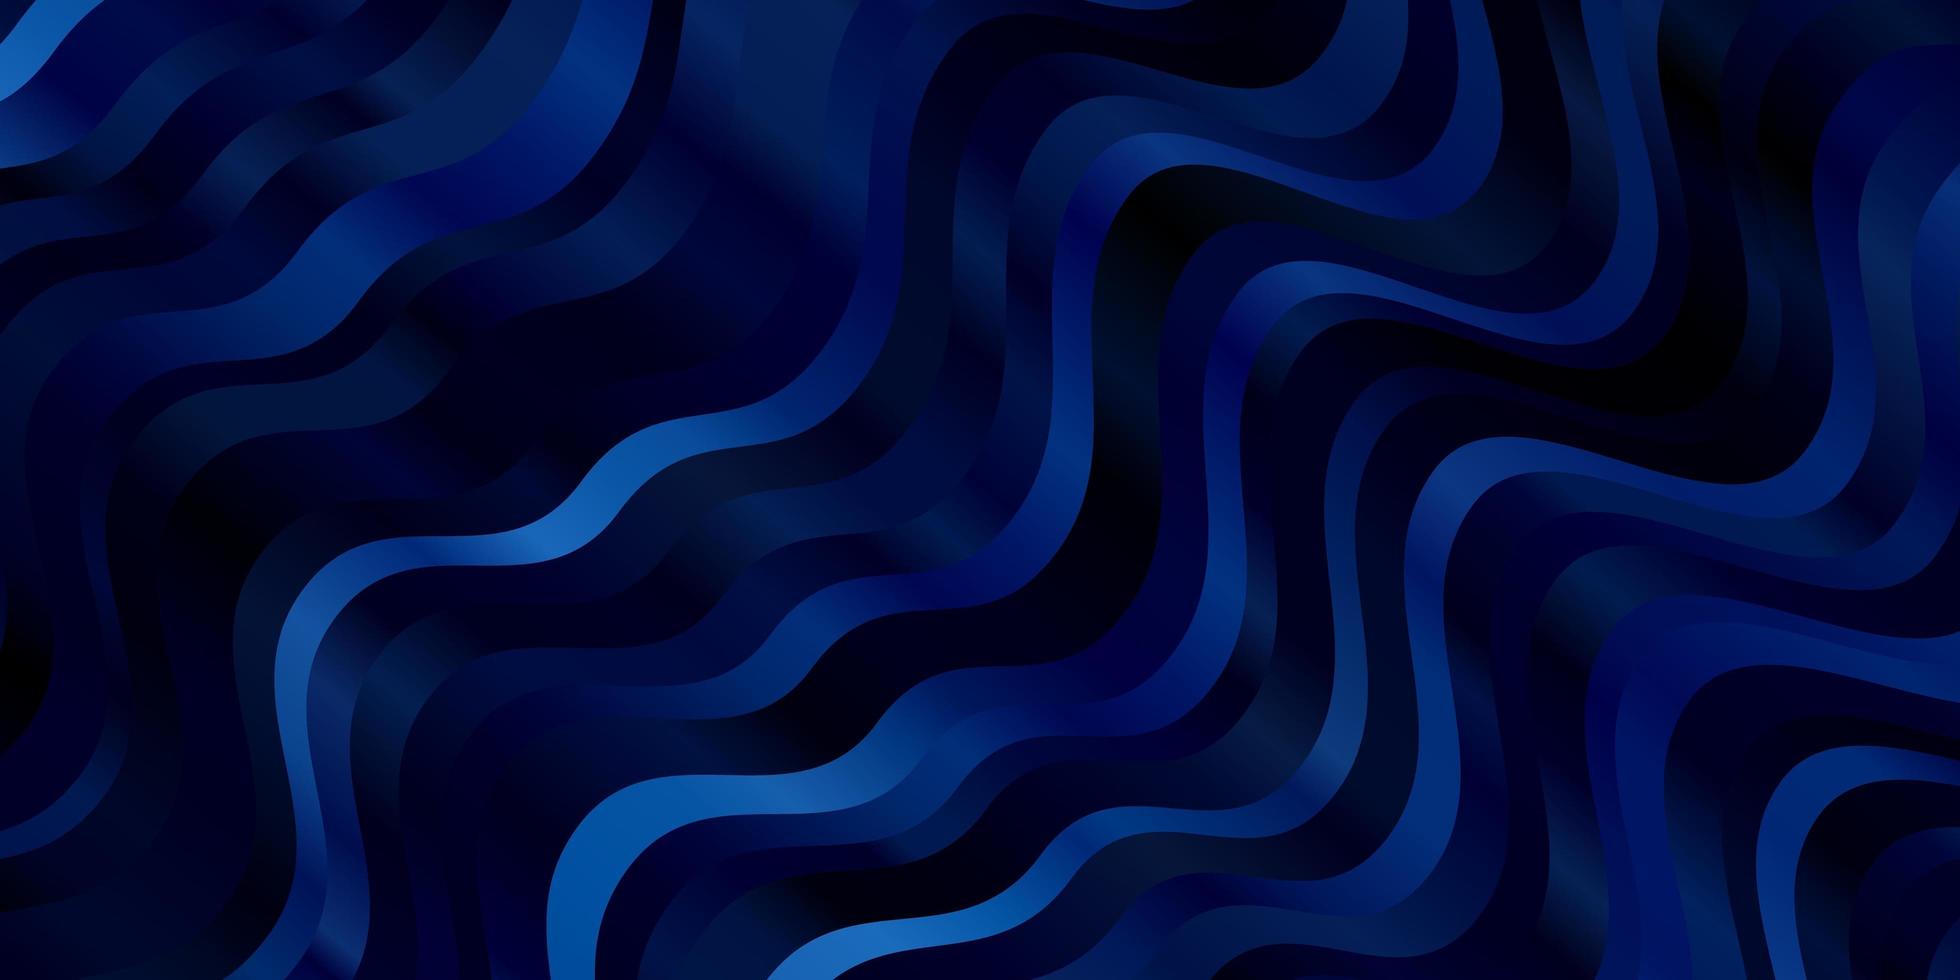 textura de vector azul claro con arco circular. Ilustración abstracta con líneas de degradado bandy. patrón para anuncios, comerciales.